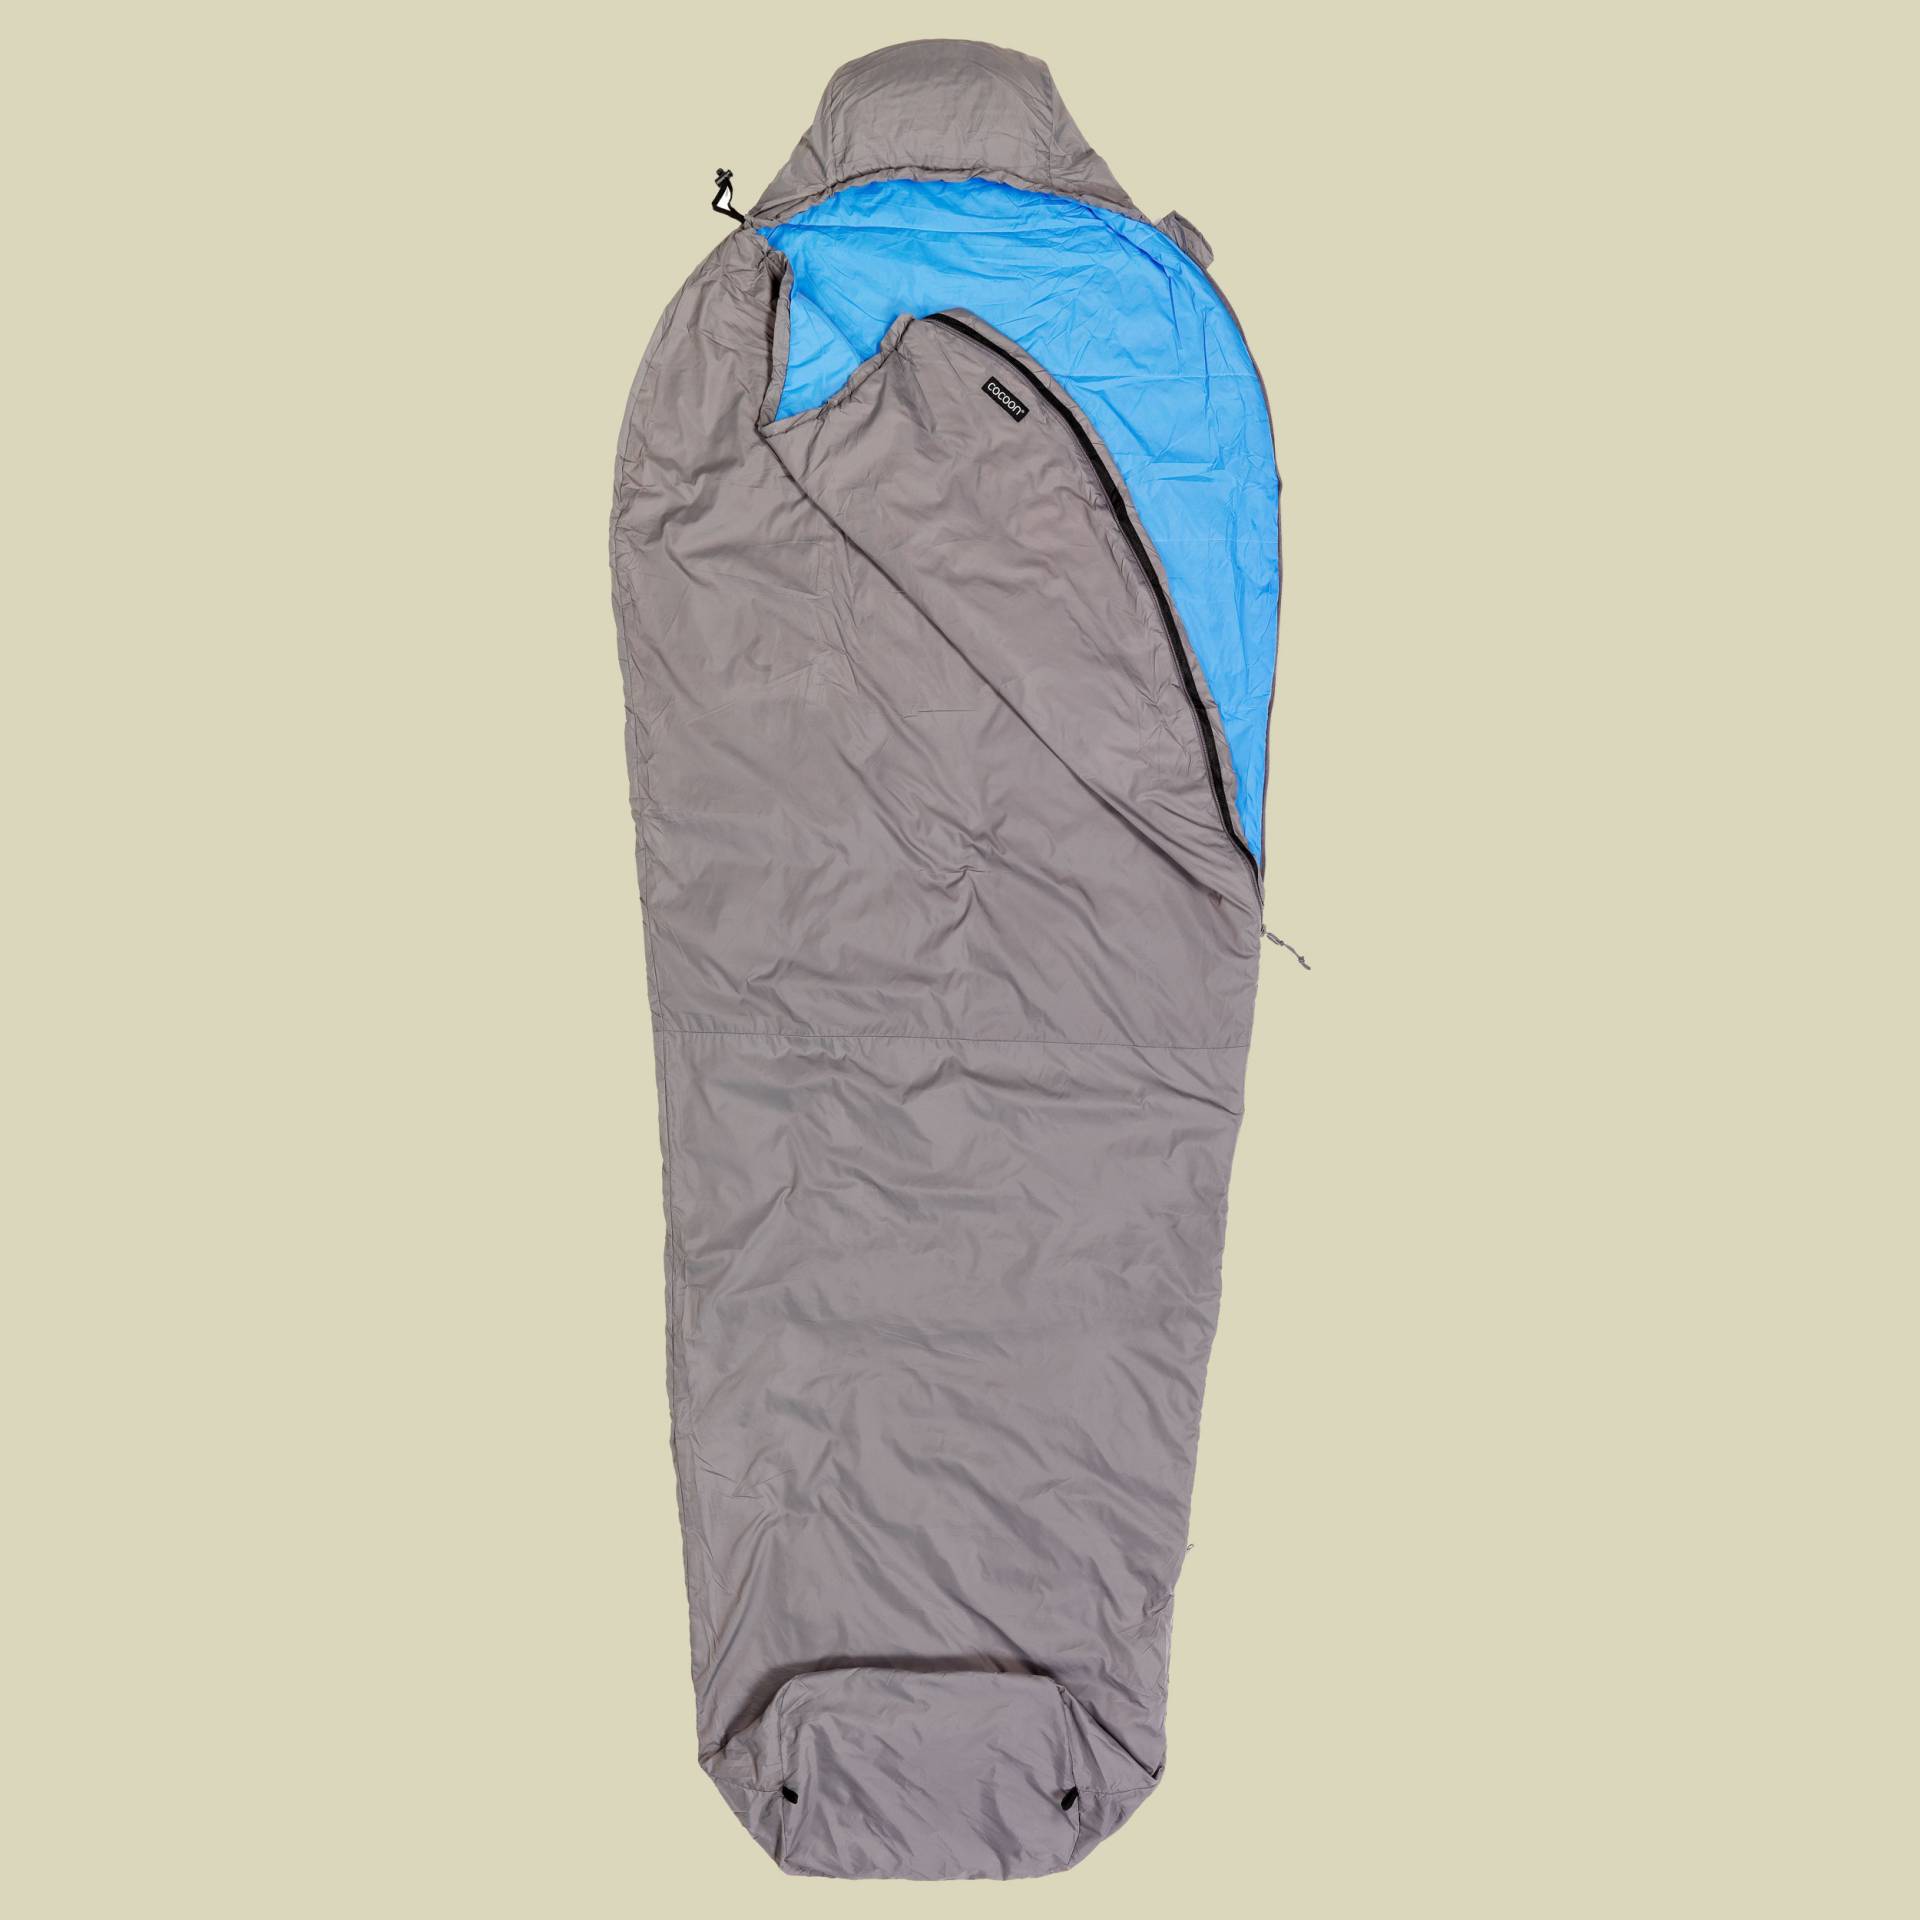 Mountain Wanderer bis Körpergröße 200 cm (long) Farbe volcano grey/light blue von Cocoon